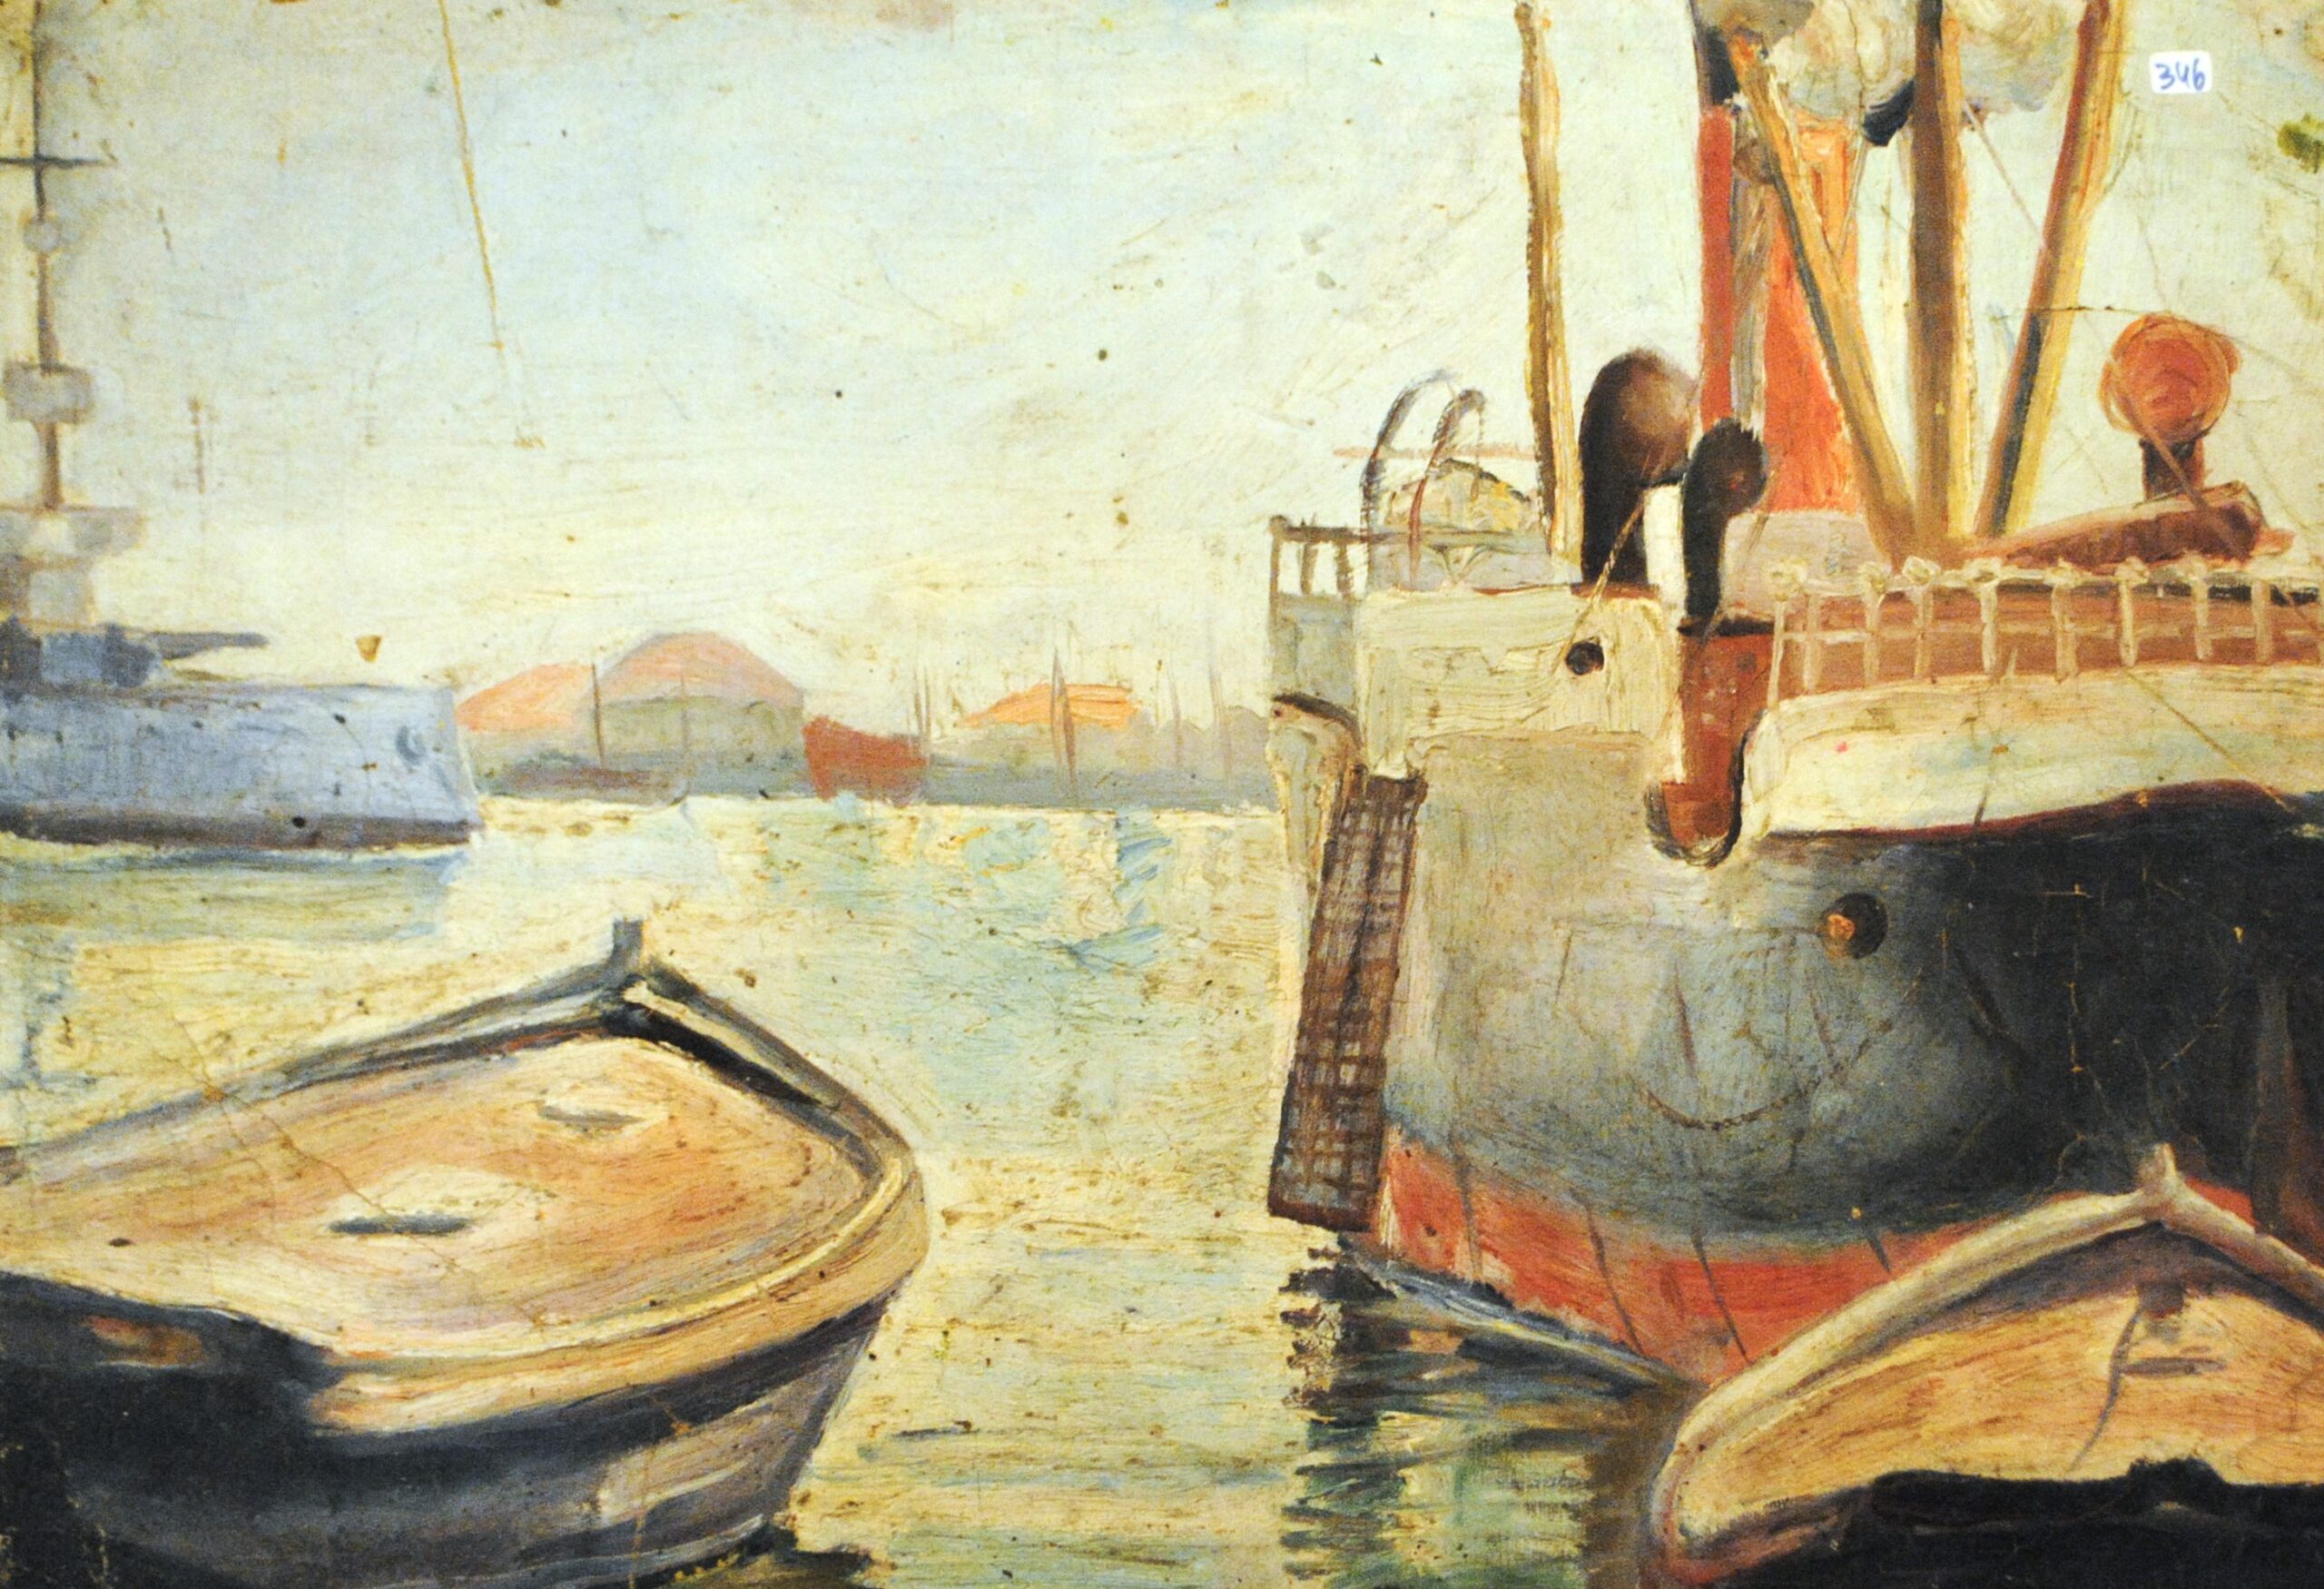 Pintura de José Manaut titulada Barcos en el puerto, Valencia (alrededores), 1916. Óleo sobre lienzo.